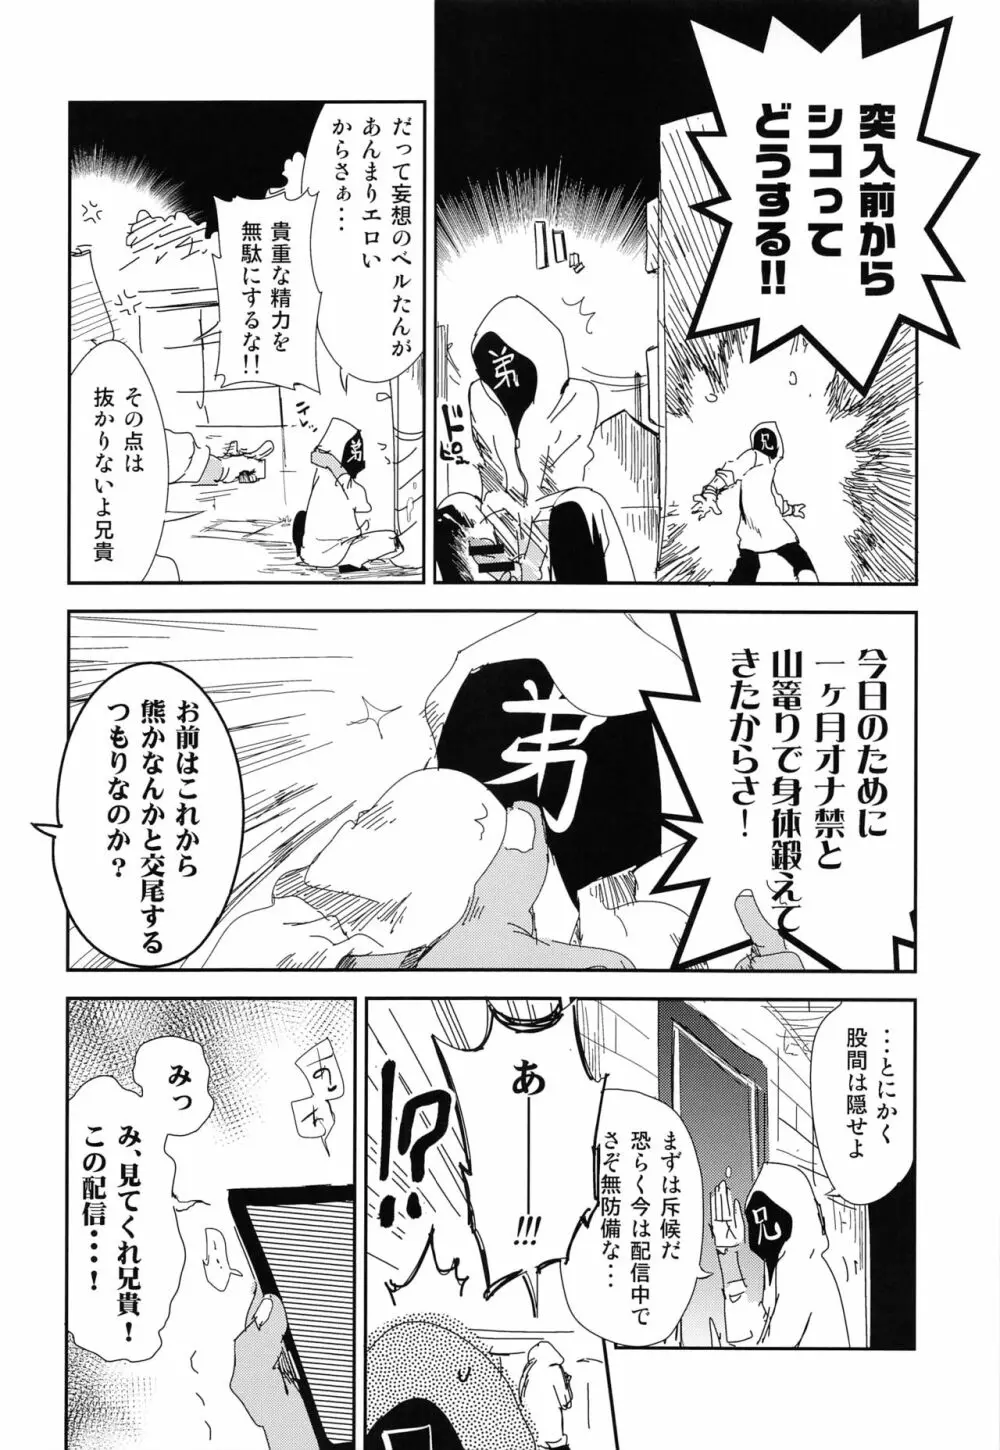 放送事故 side:D 15ページ